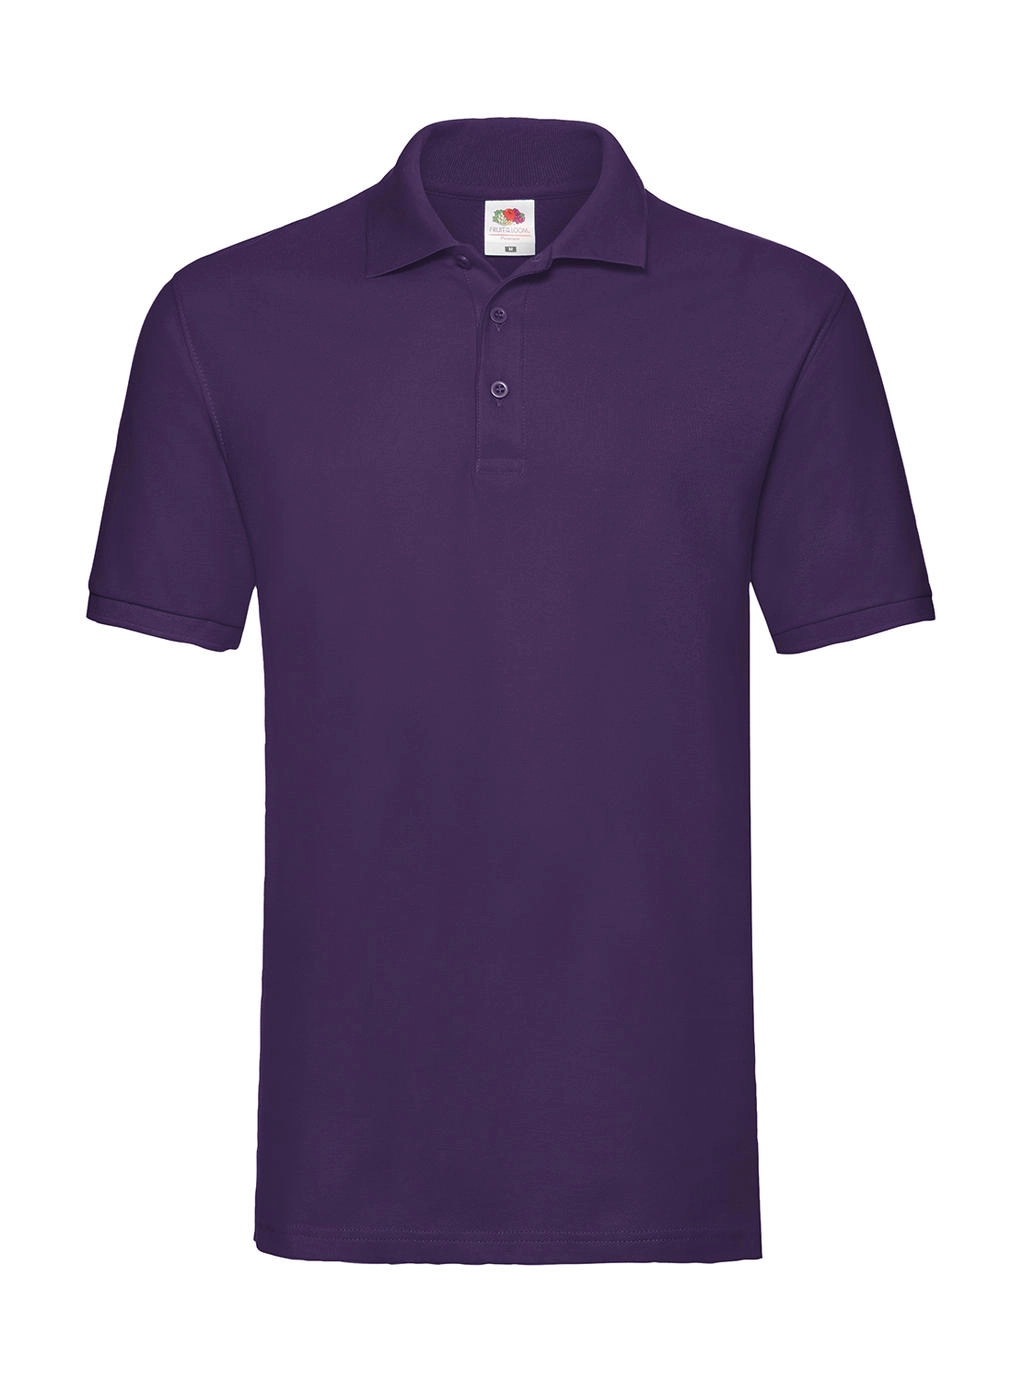 Premium Polo zum Besticken und Bedrucken in der Farbe Purple mit Ihren Logo, Schriftzug oder Motiv.